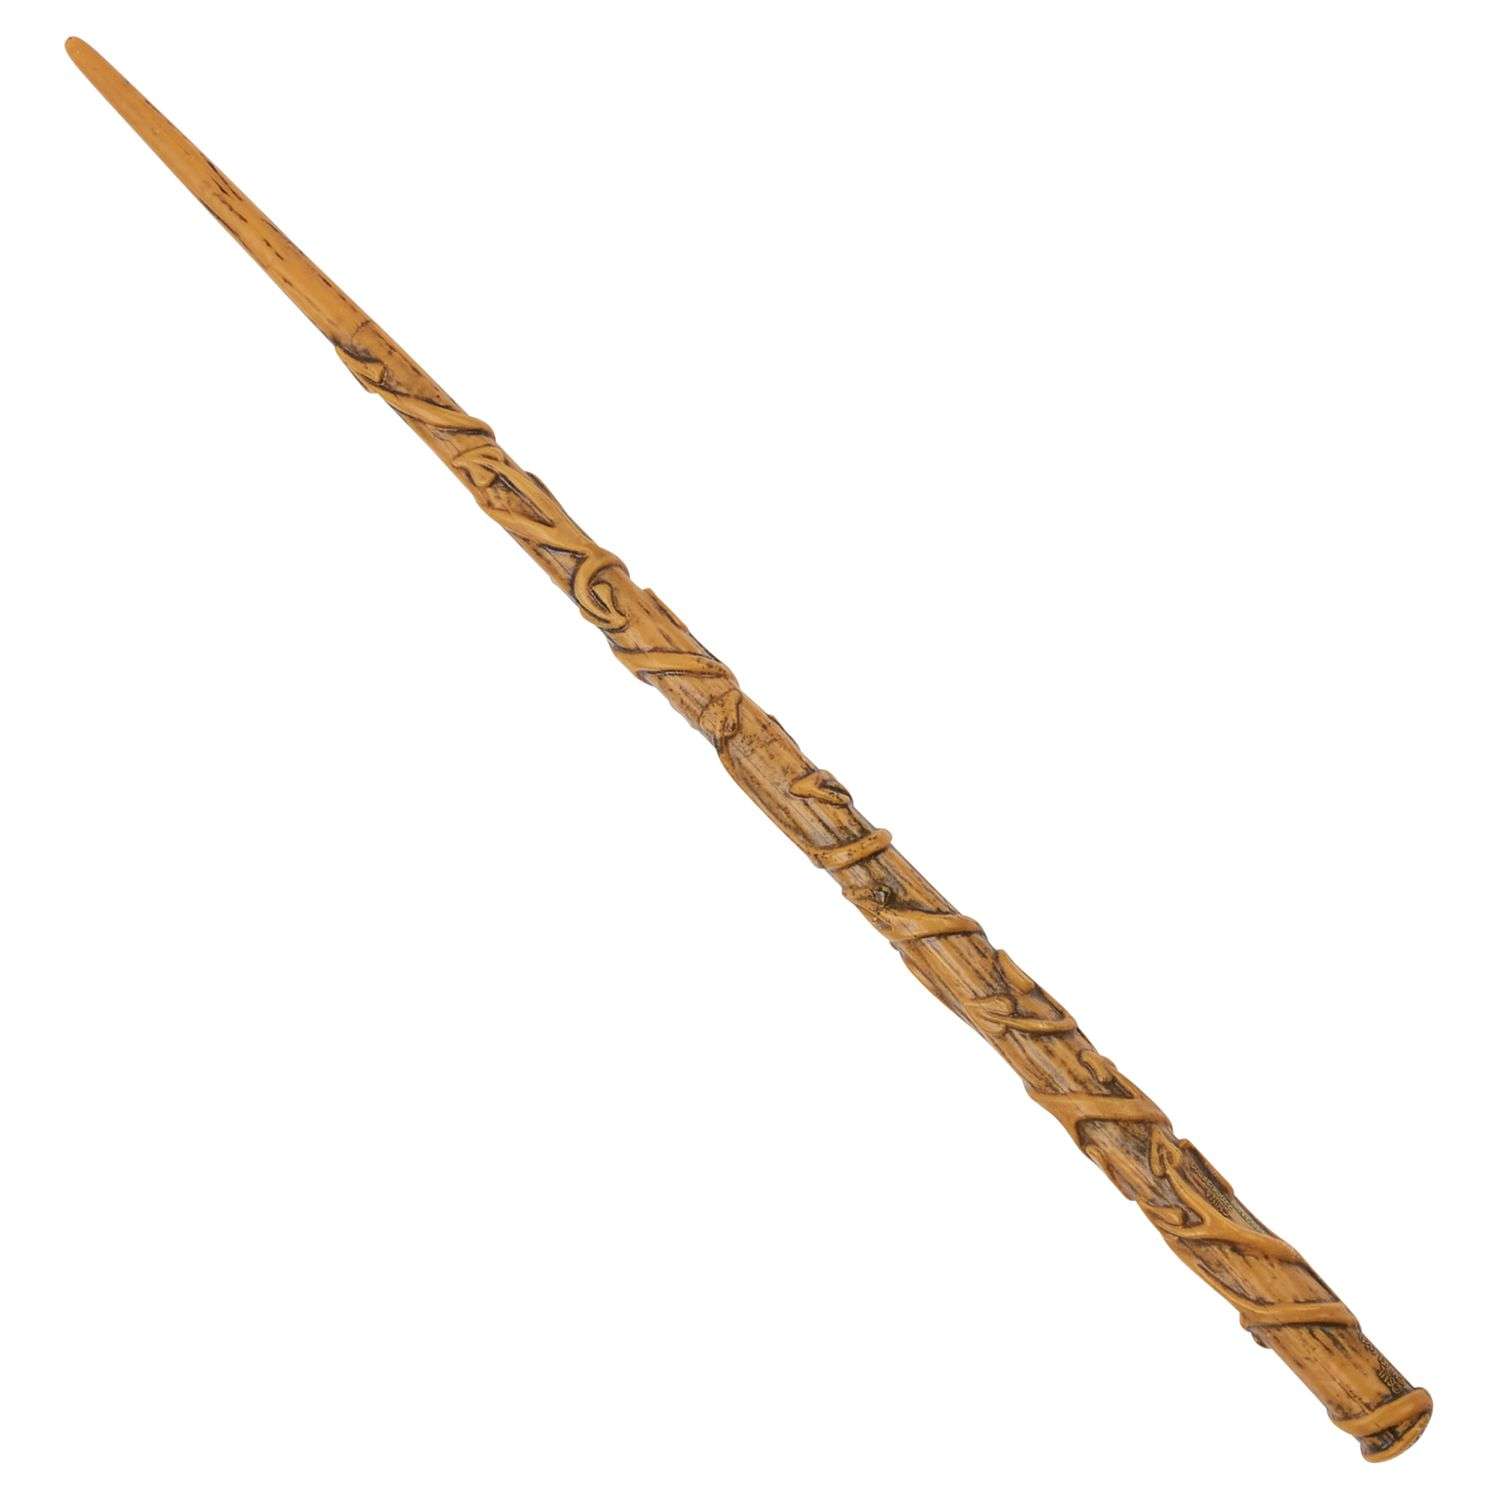 Игрушка WWO Harry Potter Волшебная палочка Hermione 6061848/20133263 - фото 1